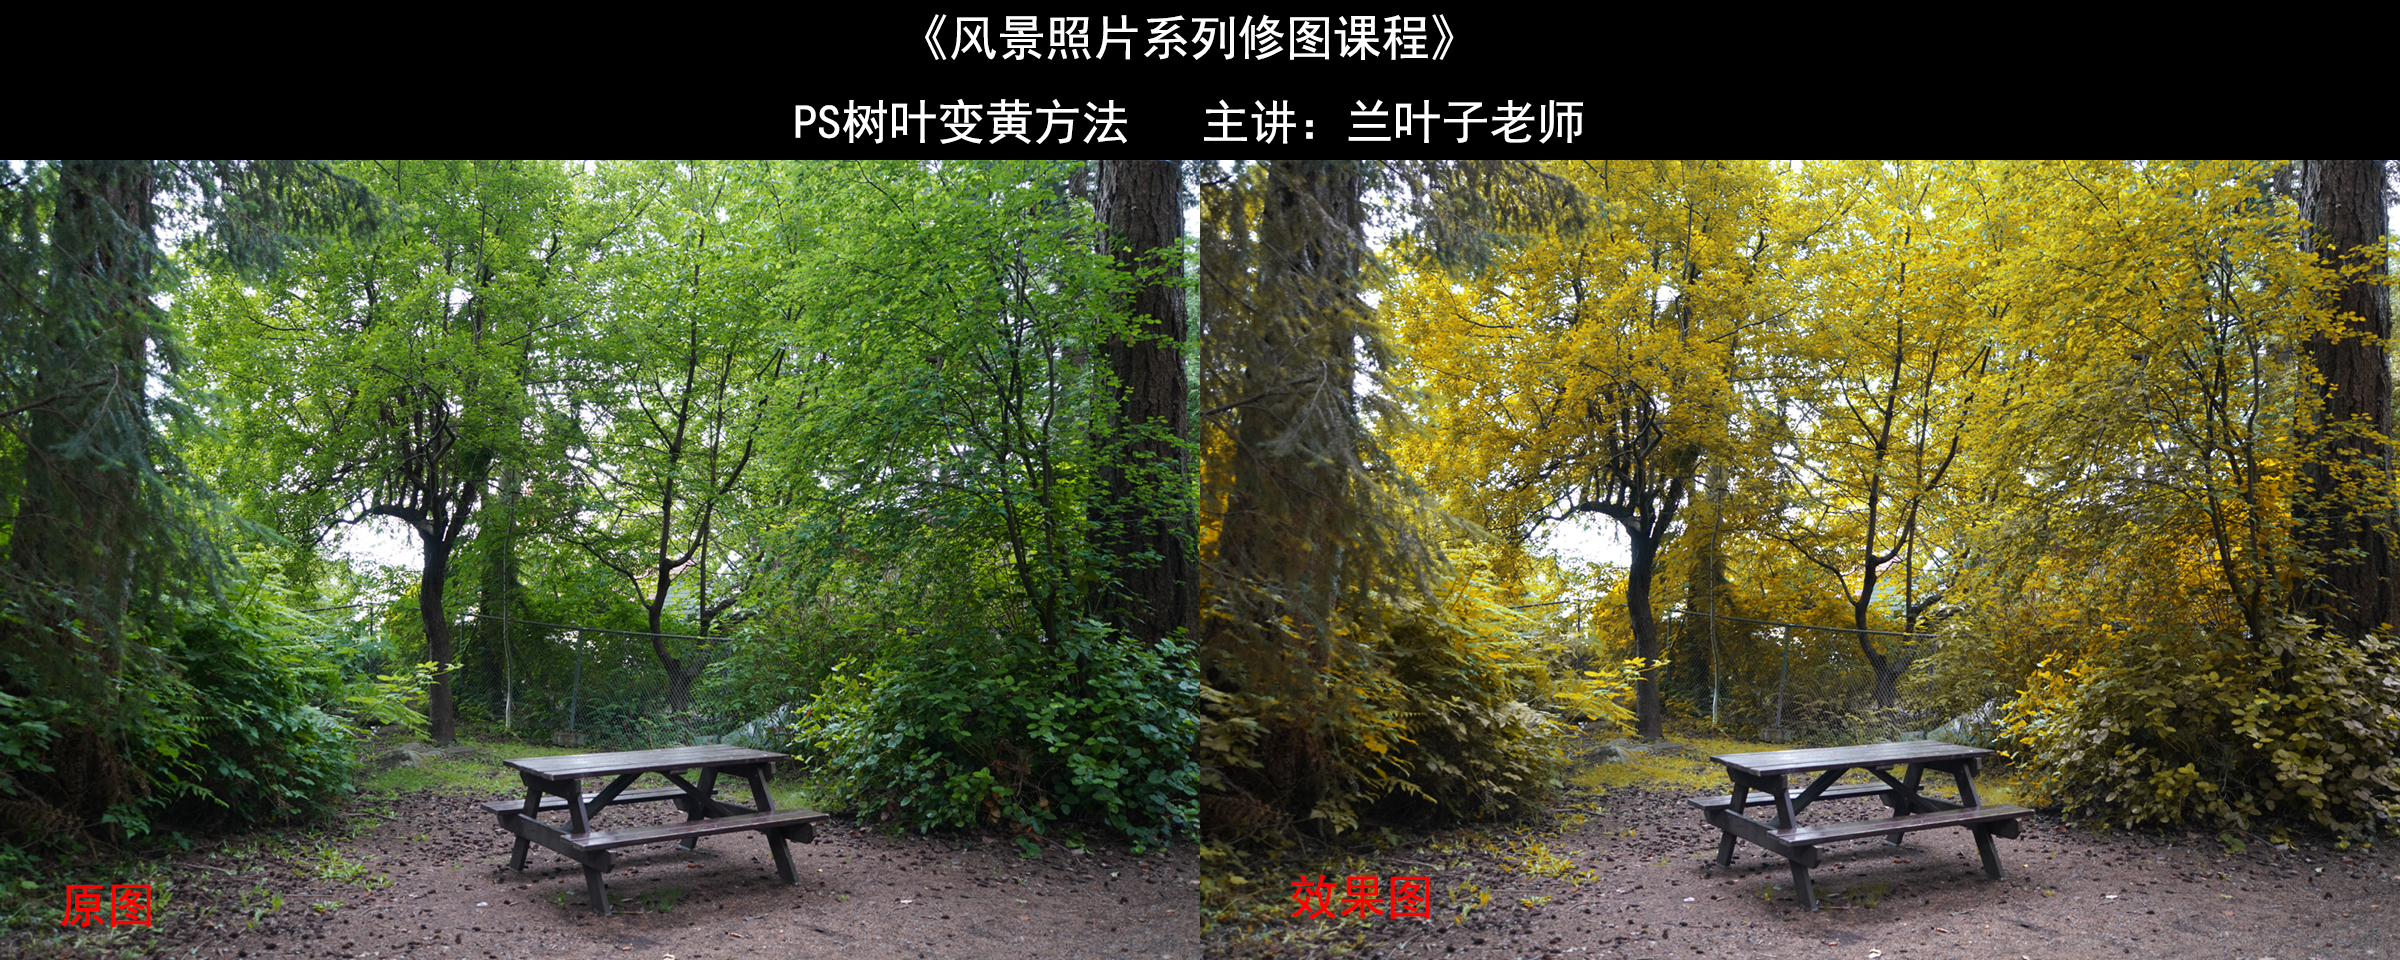 树叶变黄效果图展示.jpg